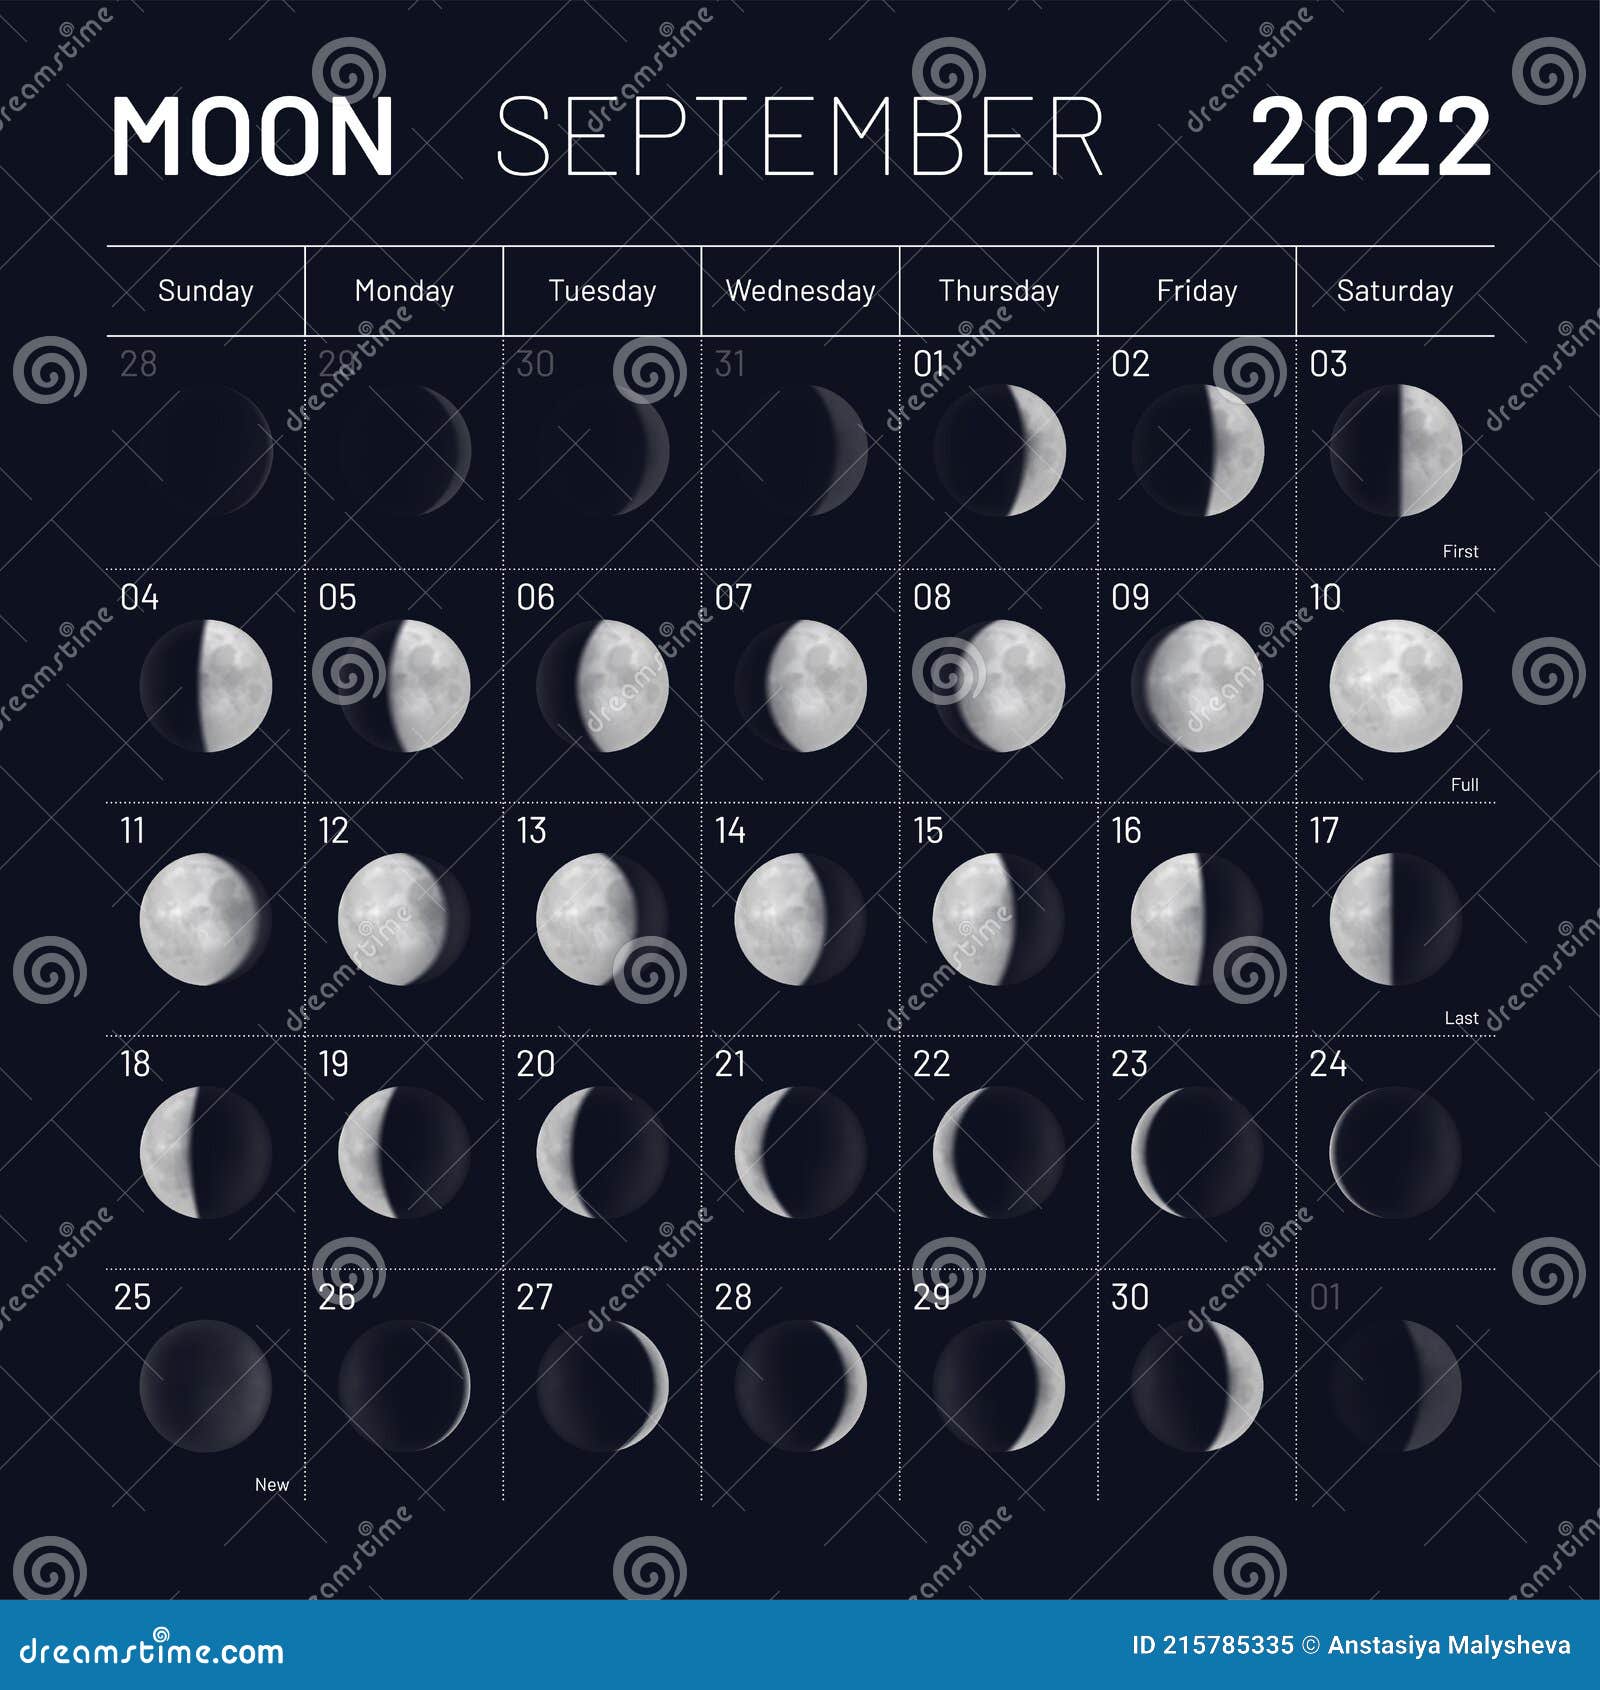 Moon Calendar September 2022 September Moon Calendar 2022 Y Dark Sky Backdrop Stock Vector -  Illustration Of Vector, Astronomy: 215785335